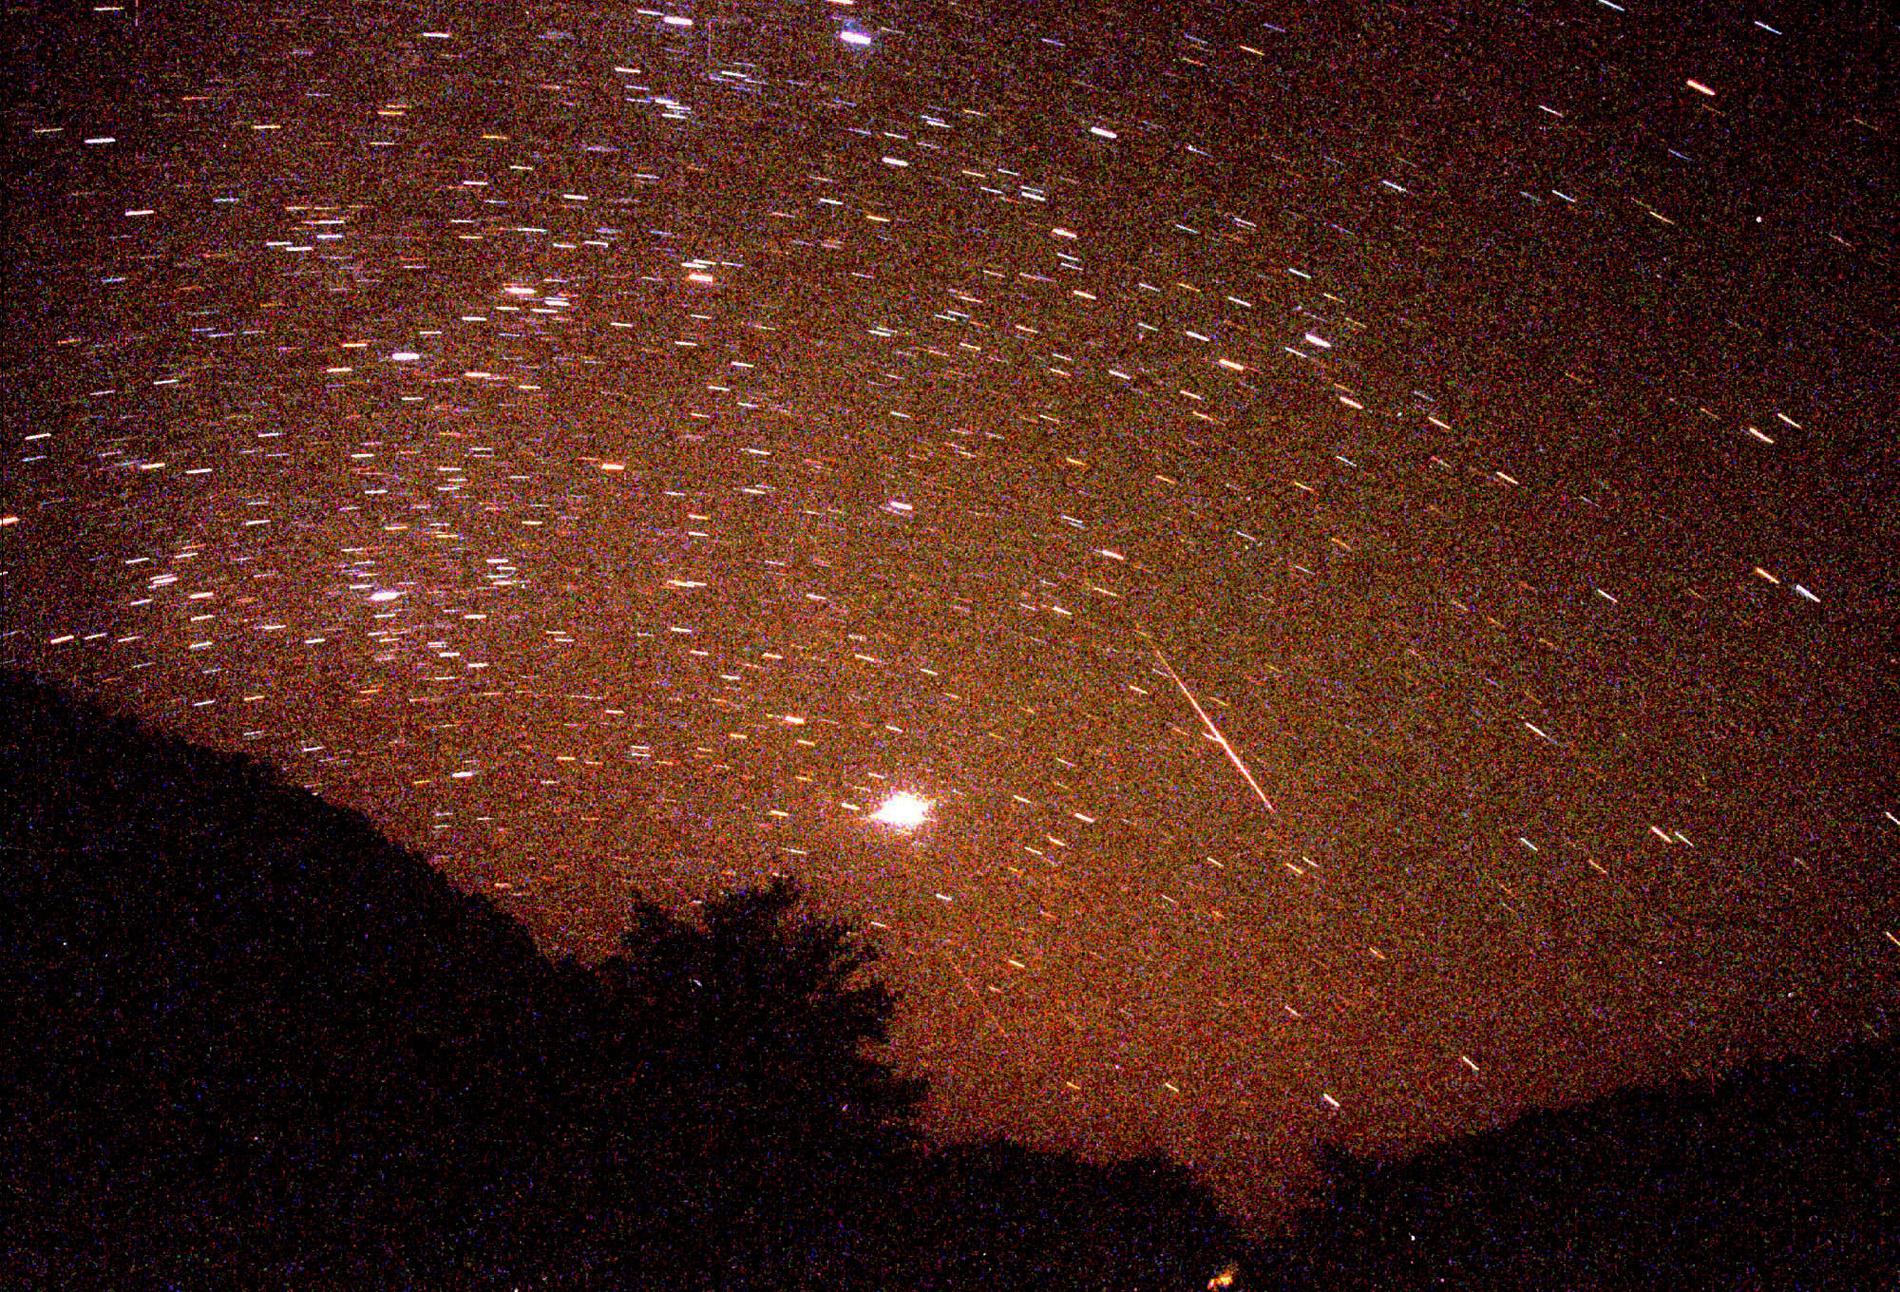 Spektakulär upplevelse. Om vädergudarna vill kommer vi i att kunna se ett meteorregn skina på himlen i natt. Bilden visar ett regn av meteorer (Leoniderna).